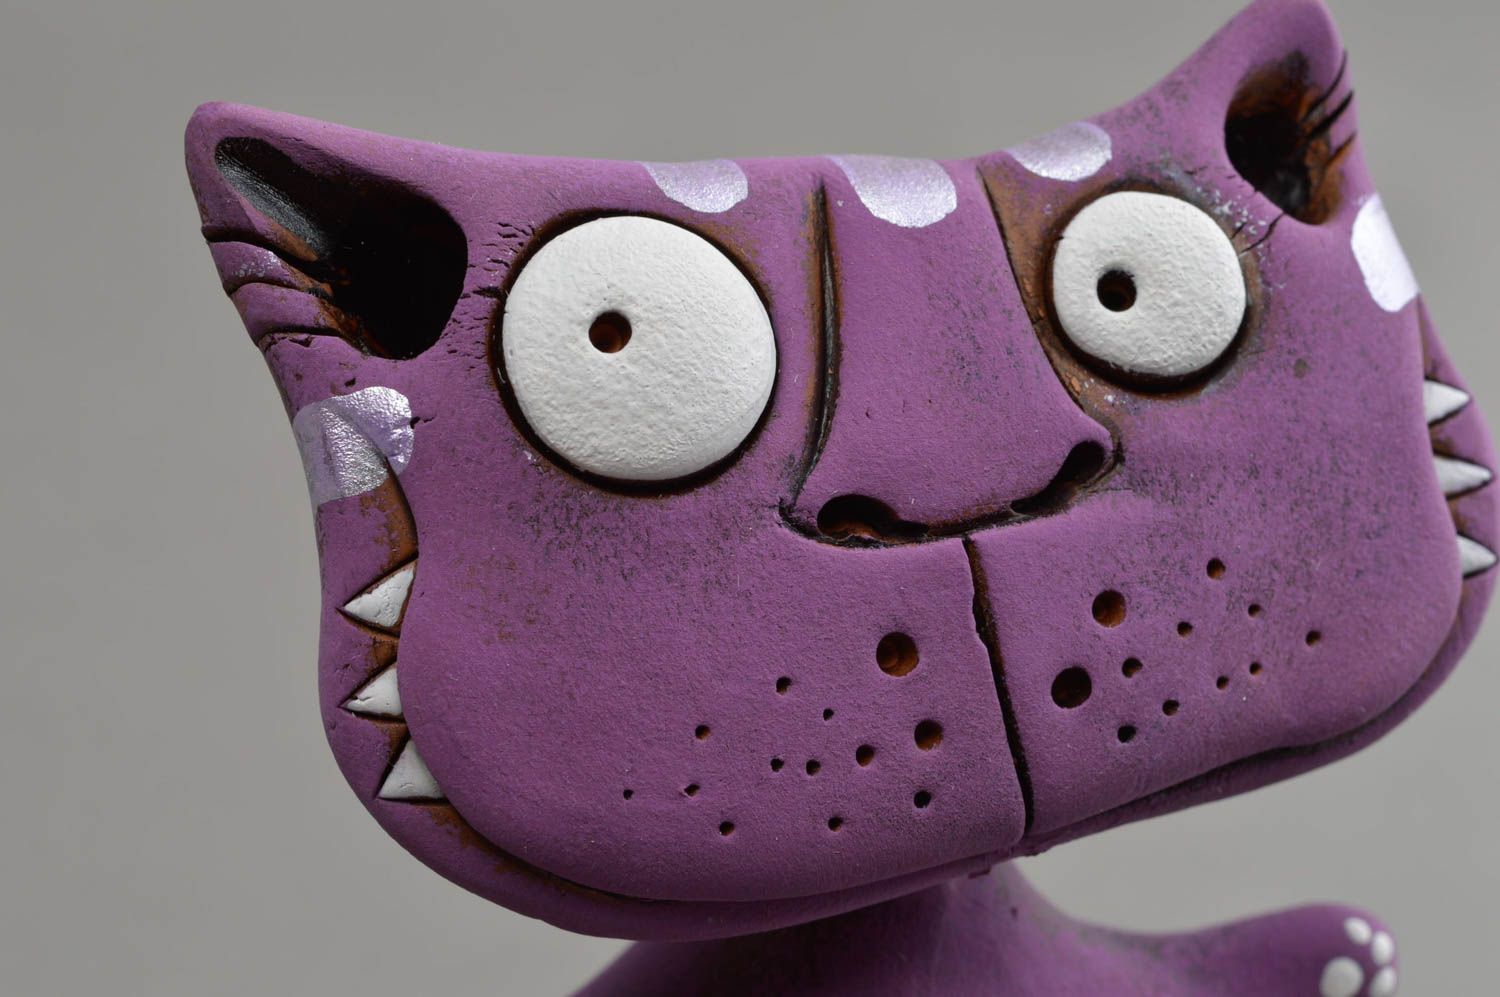 Фиолетовая глиняная статуэтка в виде кота ручной работы расписанная красками фото 4